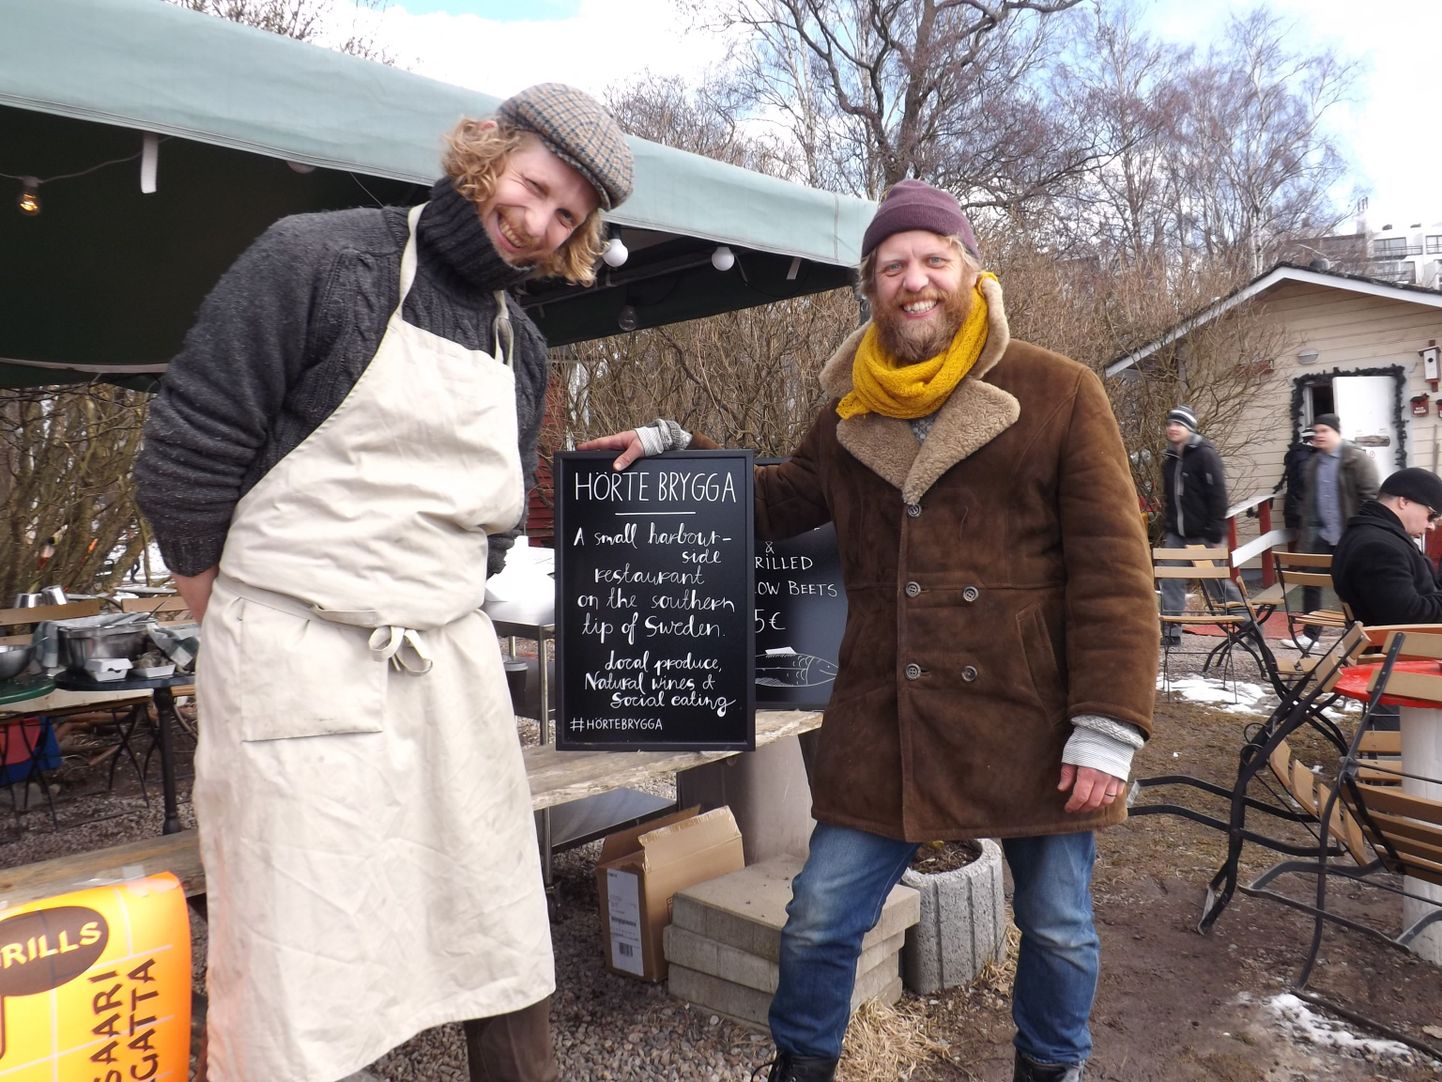 И вот они, герои дня: шеф-повар и владелец ресторана Hörte Brygga Мартин Сьёстранд и его правая рука Томас Даль.